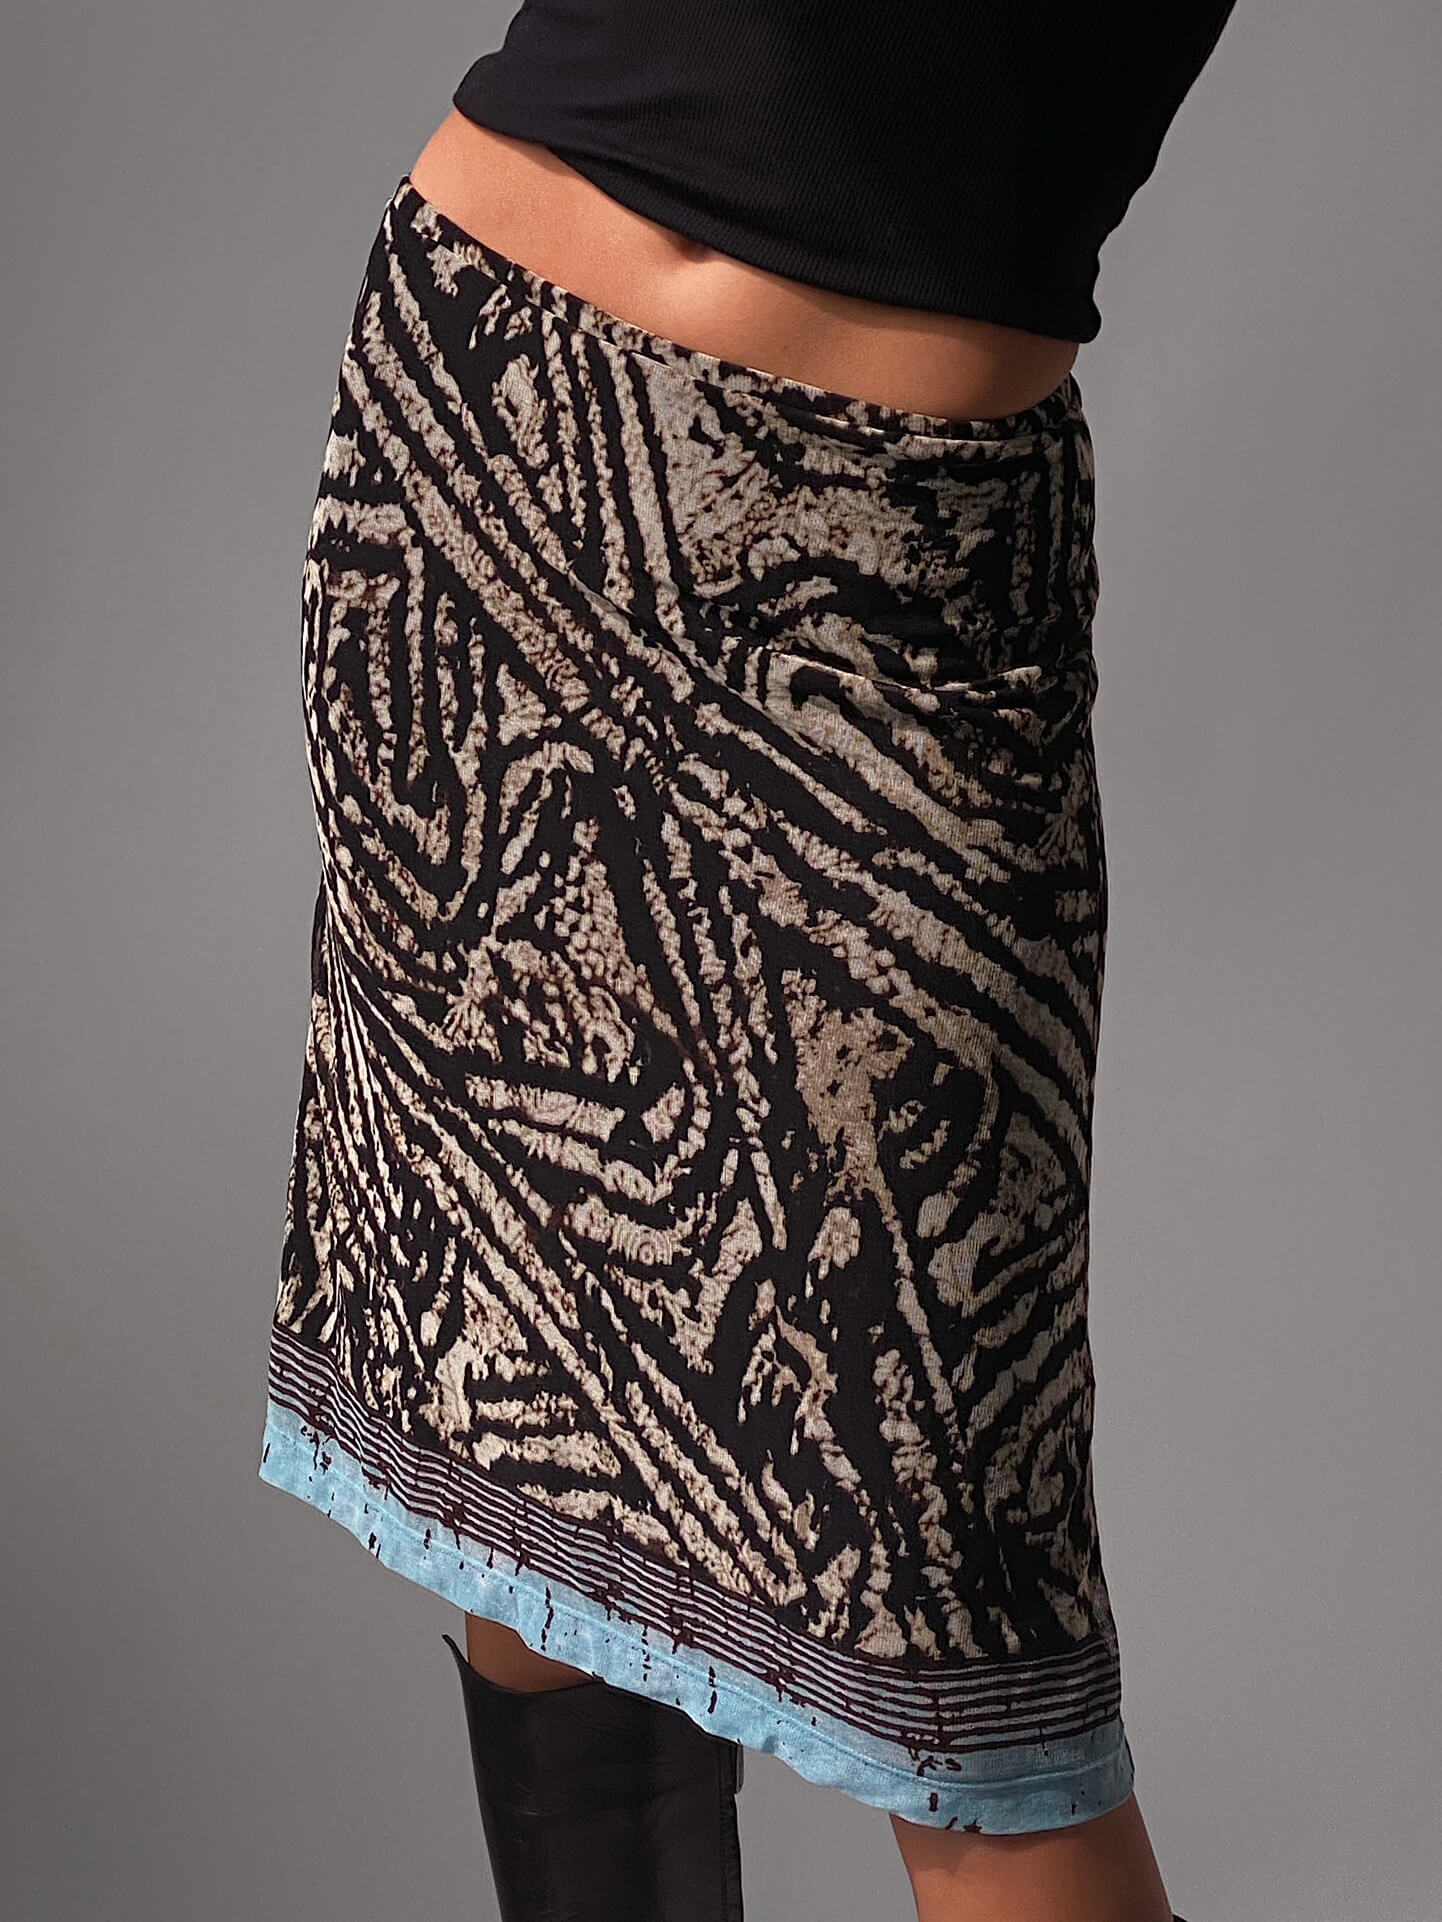 Vintage Printed Mesh Skirt | S/M